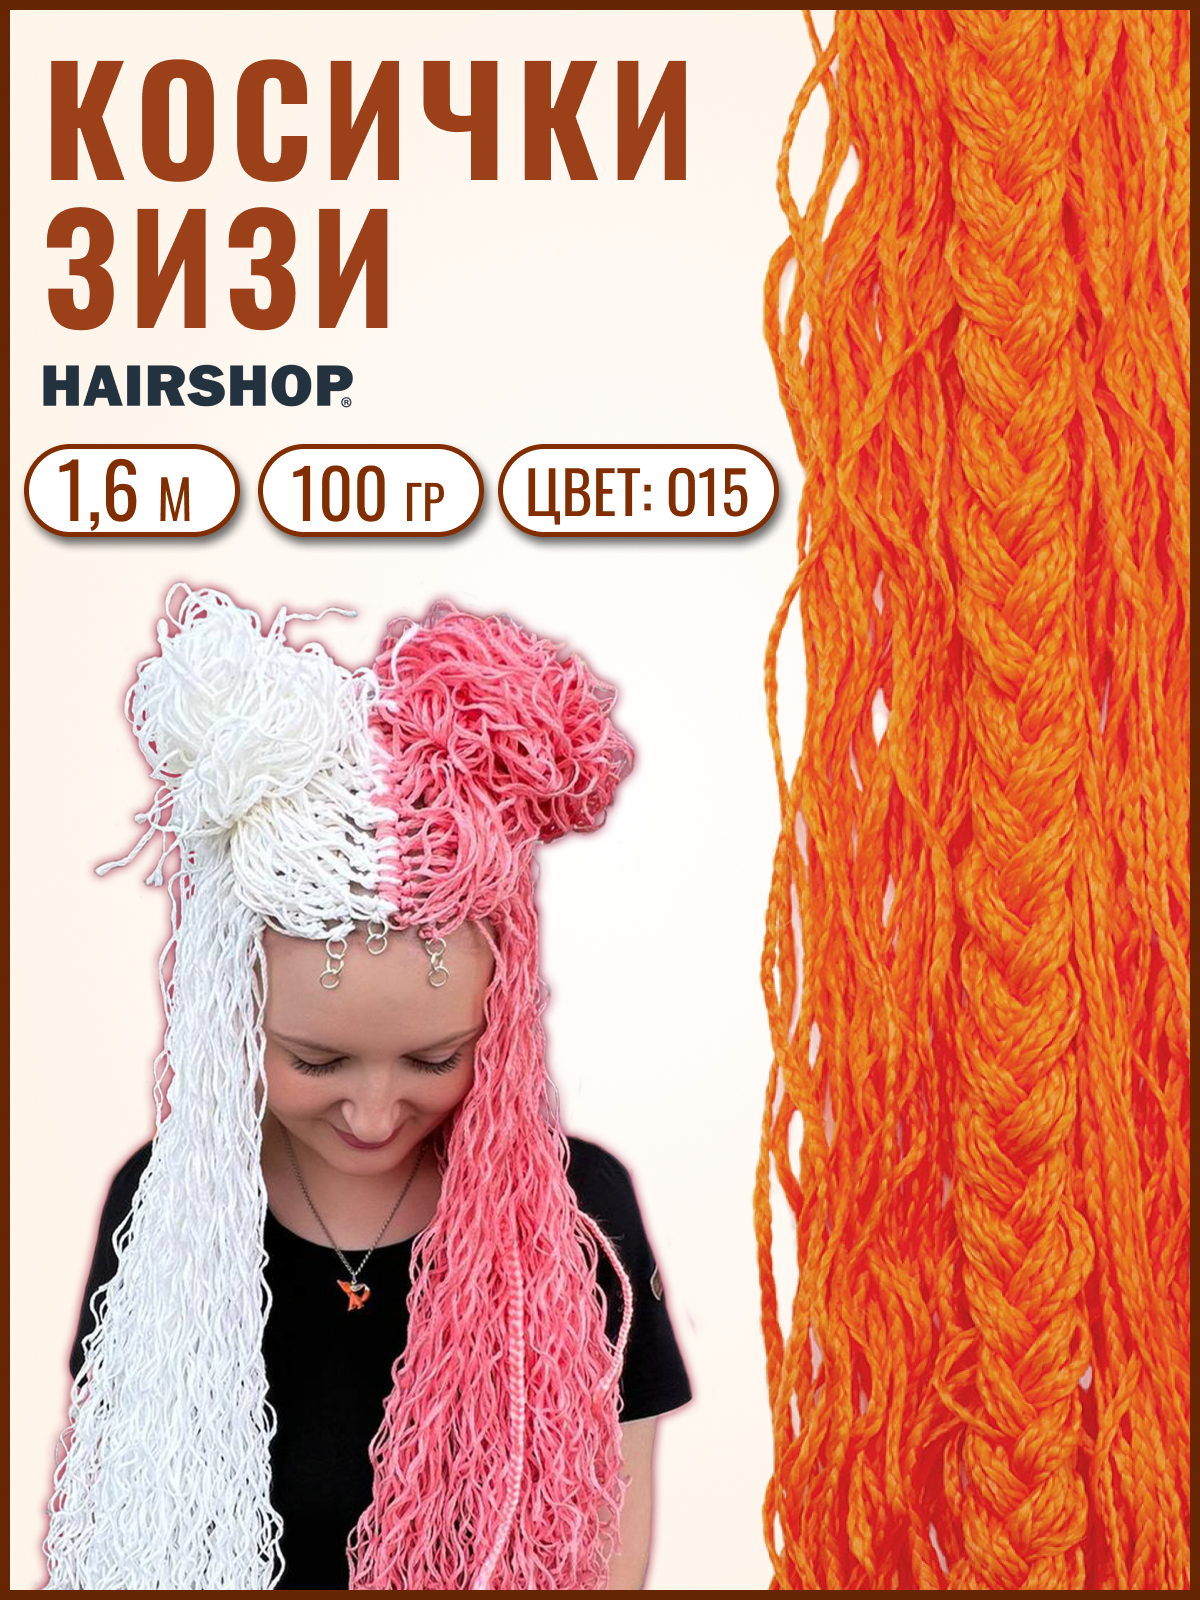 Косички Hairshop Зизи волна О15 Оранжевый косички hairshop зизи градиент волна ф5 г16 ф1 100г